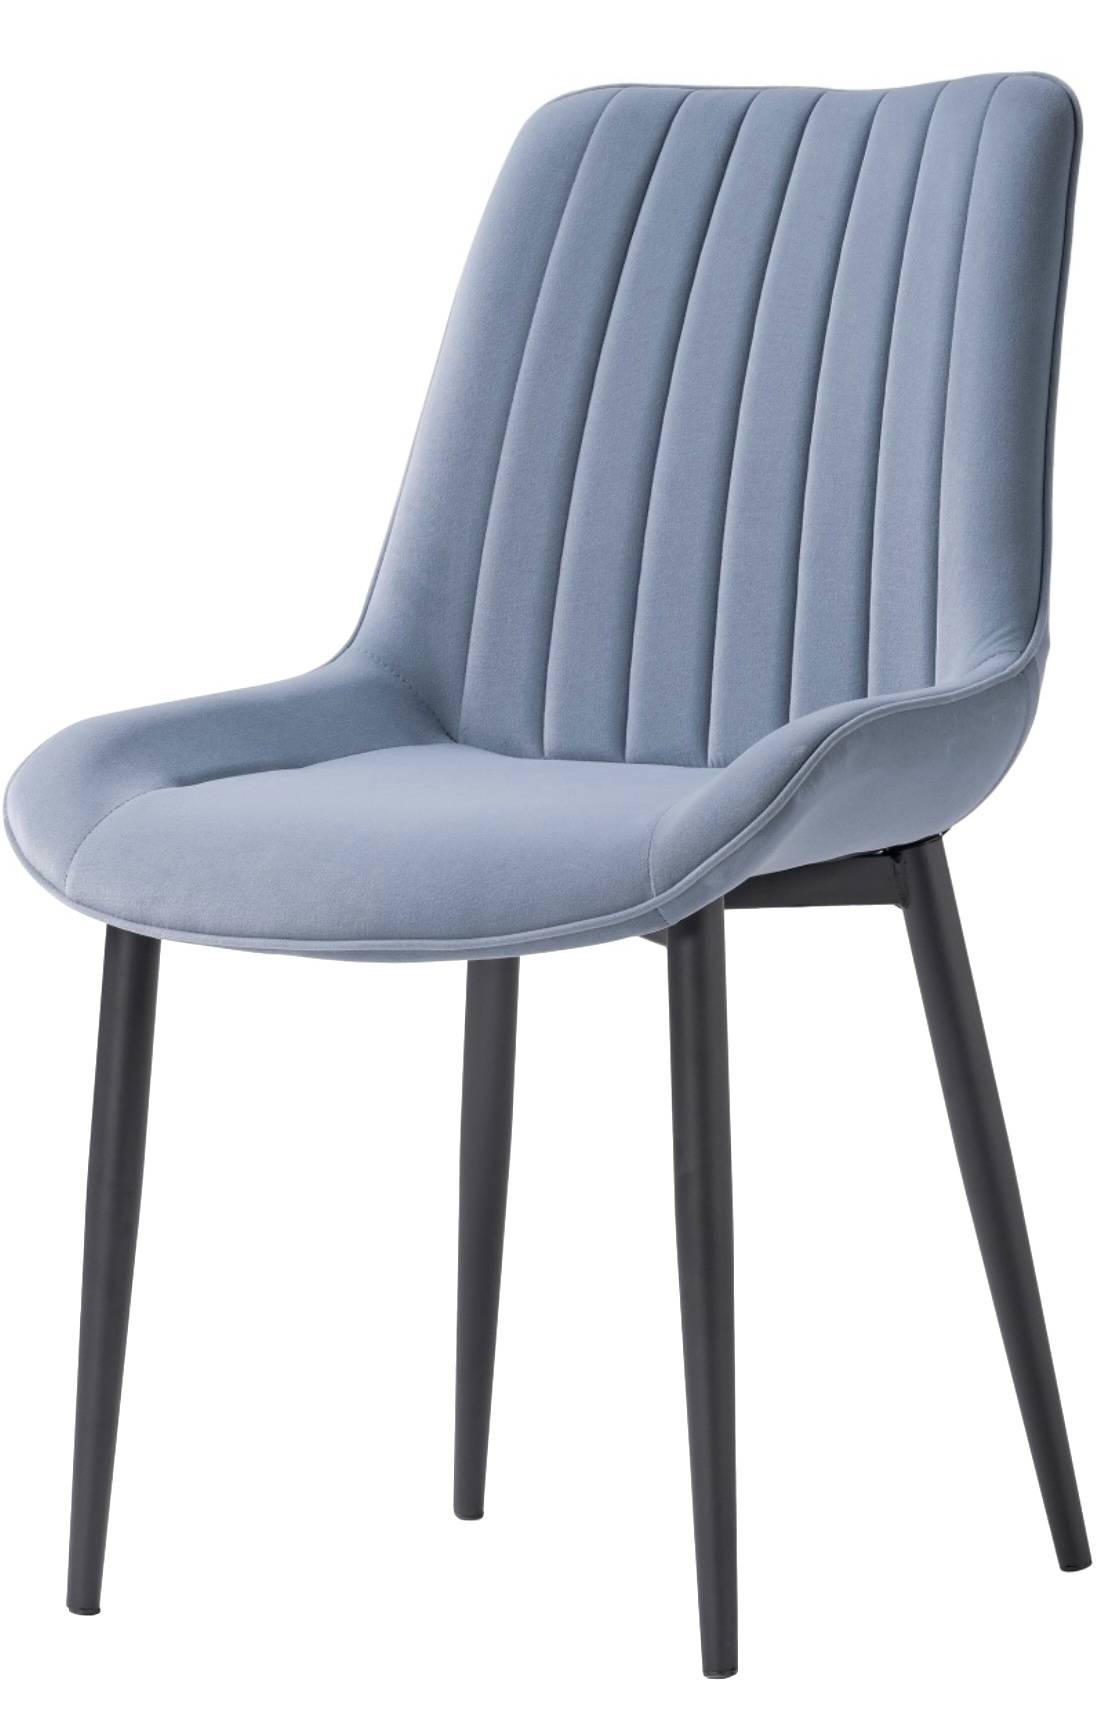 Купить голубой стул seda в Raroom